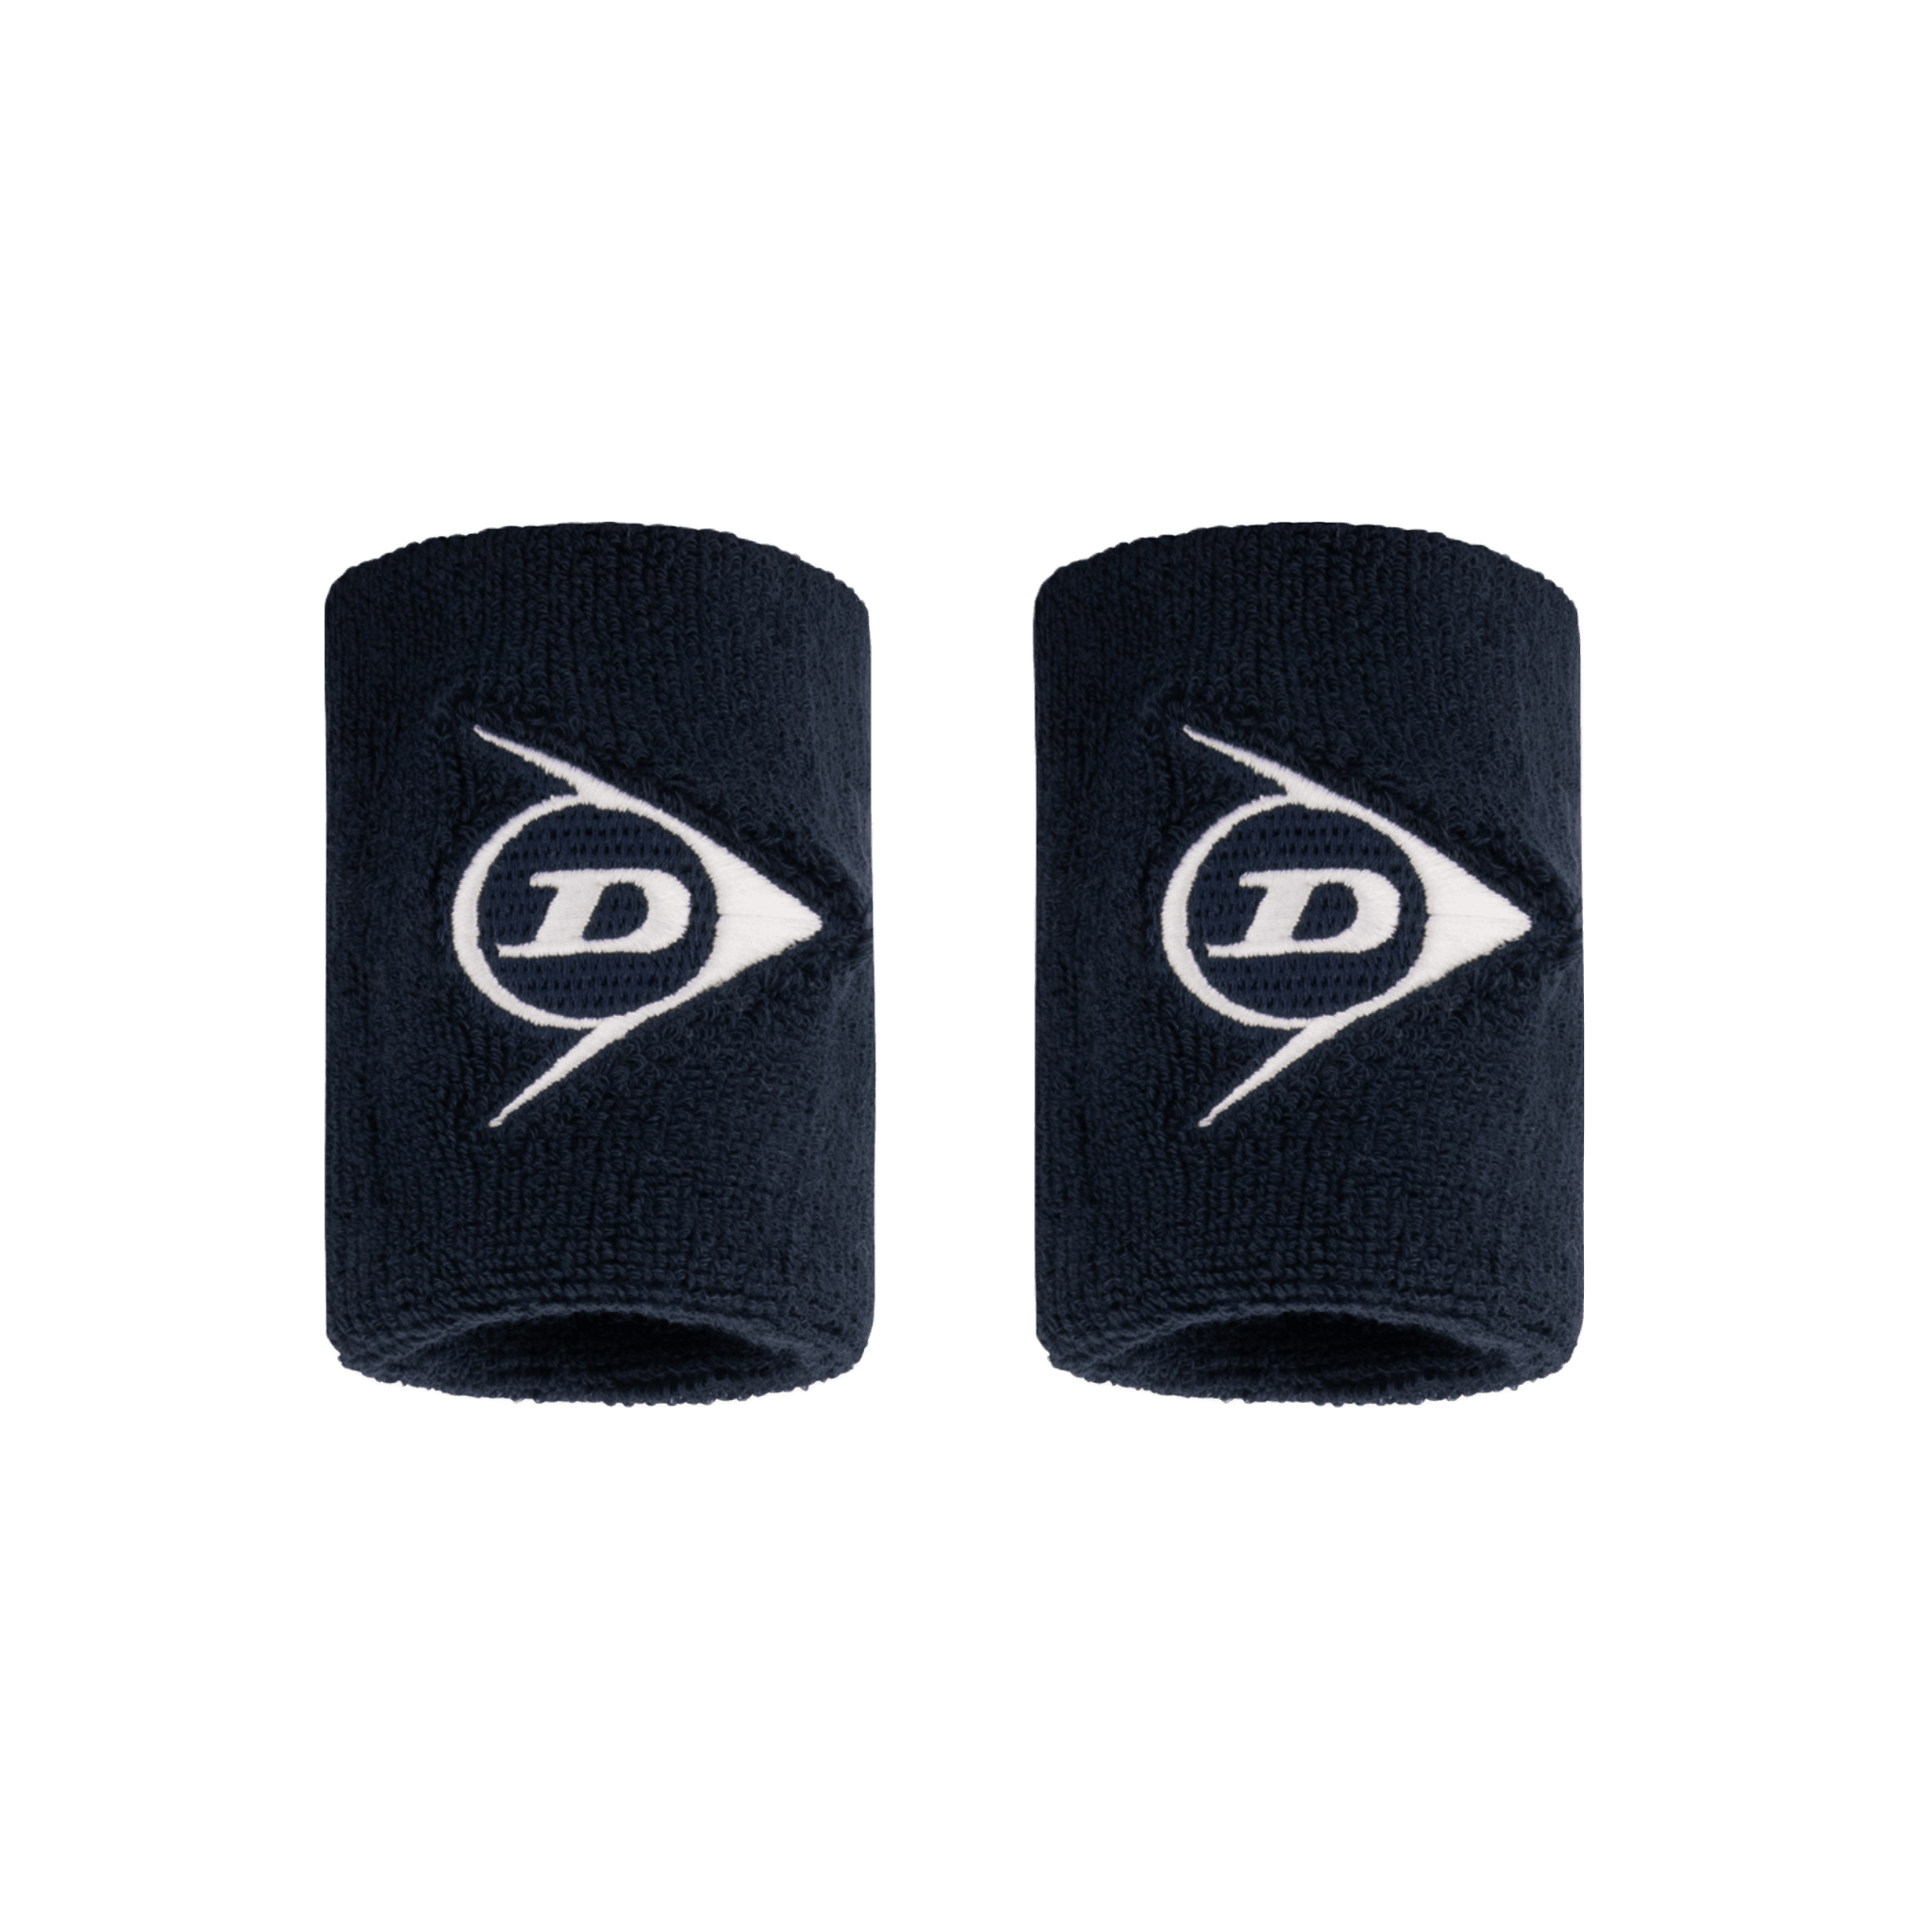 Dunlop Padel Polsband Short (2 stuks) navy blauw met wit logo - PadelAmigos